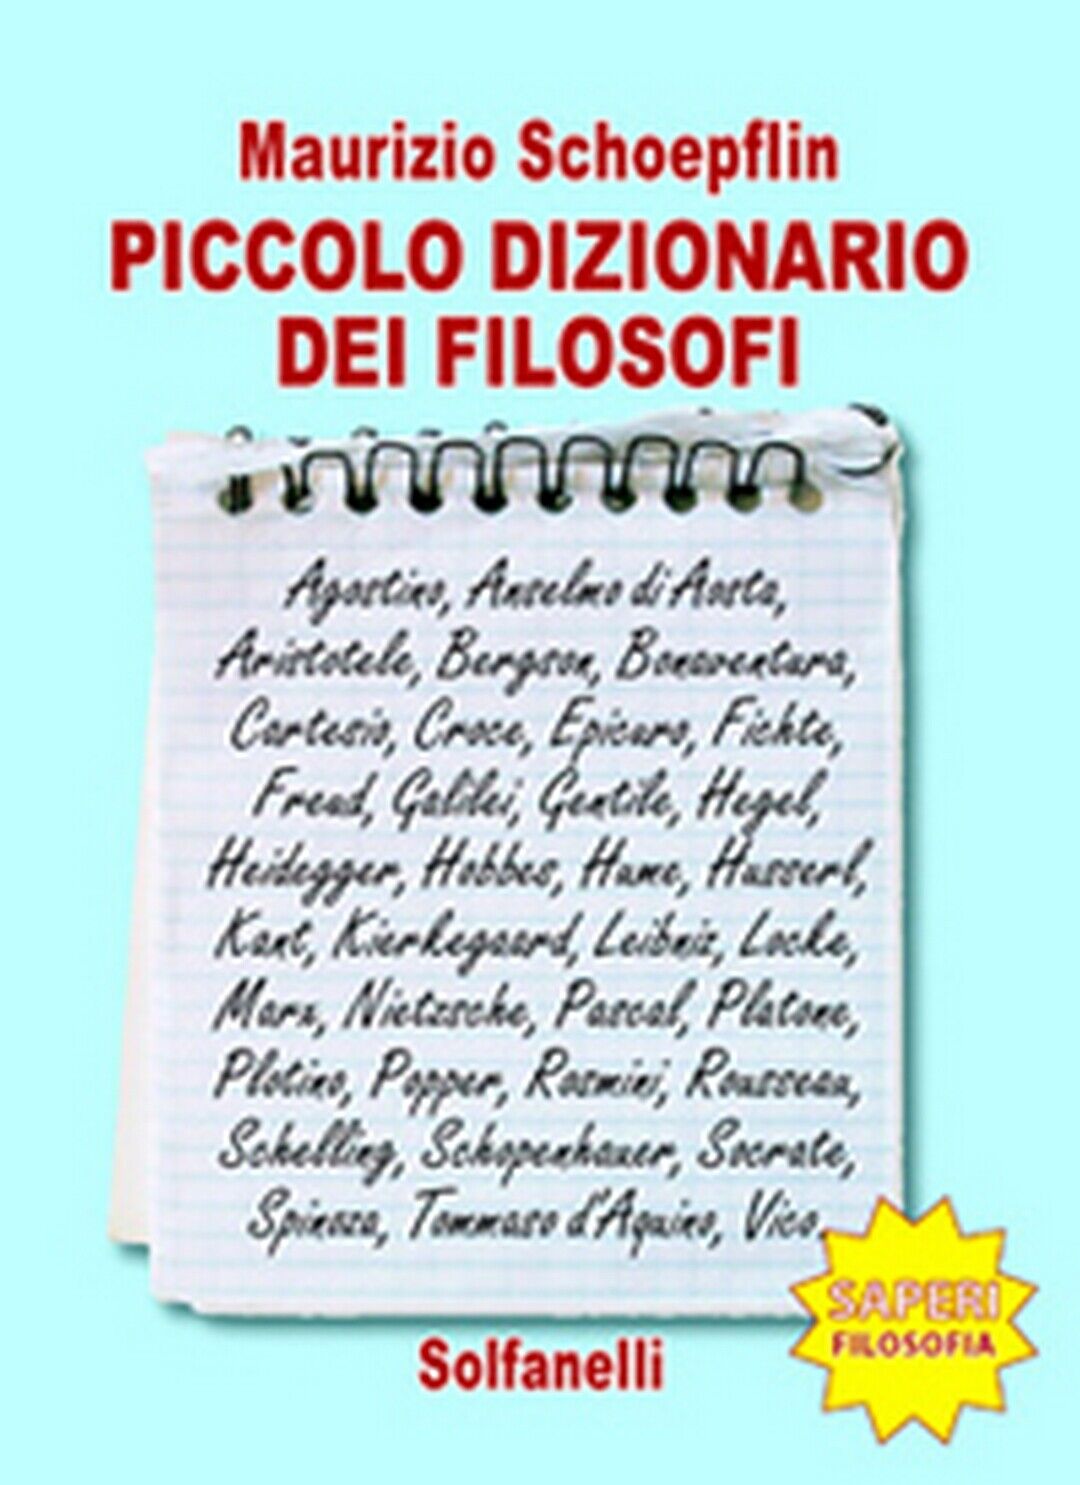 PICCOLO DIZIONARIO DEI FILOSOFI  di Maurizio Schoepflin,  Solfanelli Edizioni